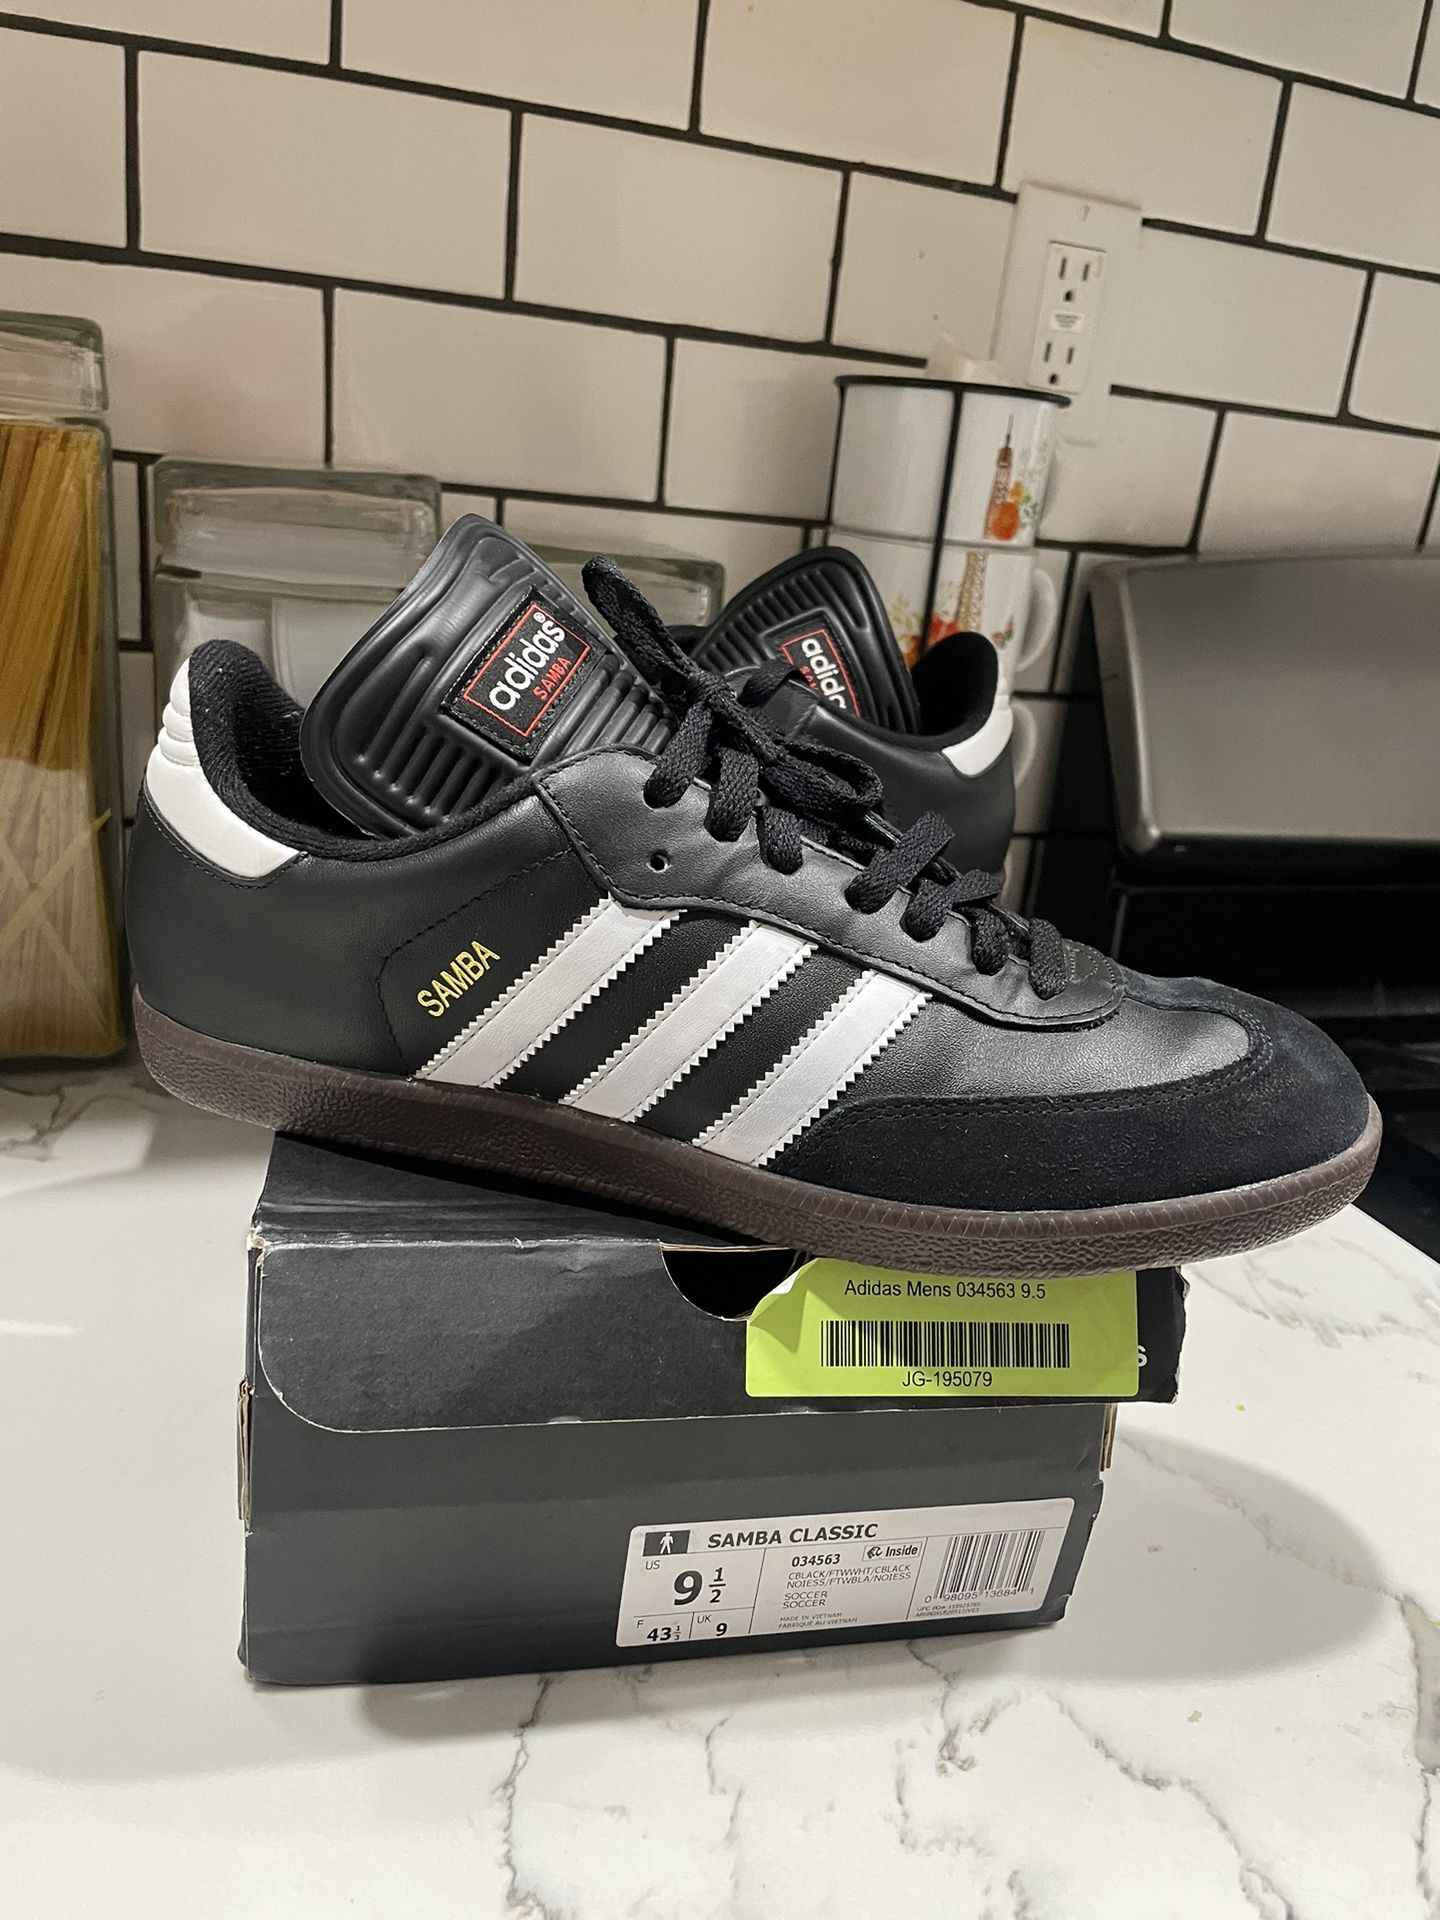 Adidas Samba Classic Size 9 1/2